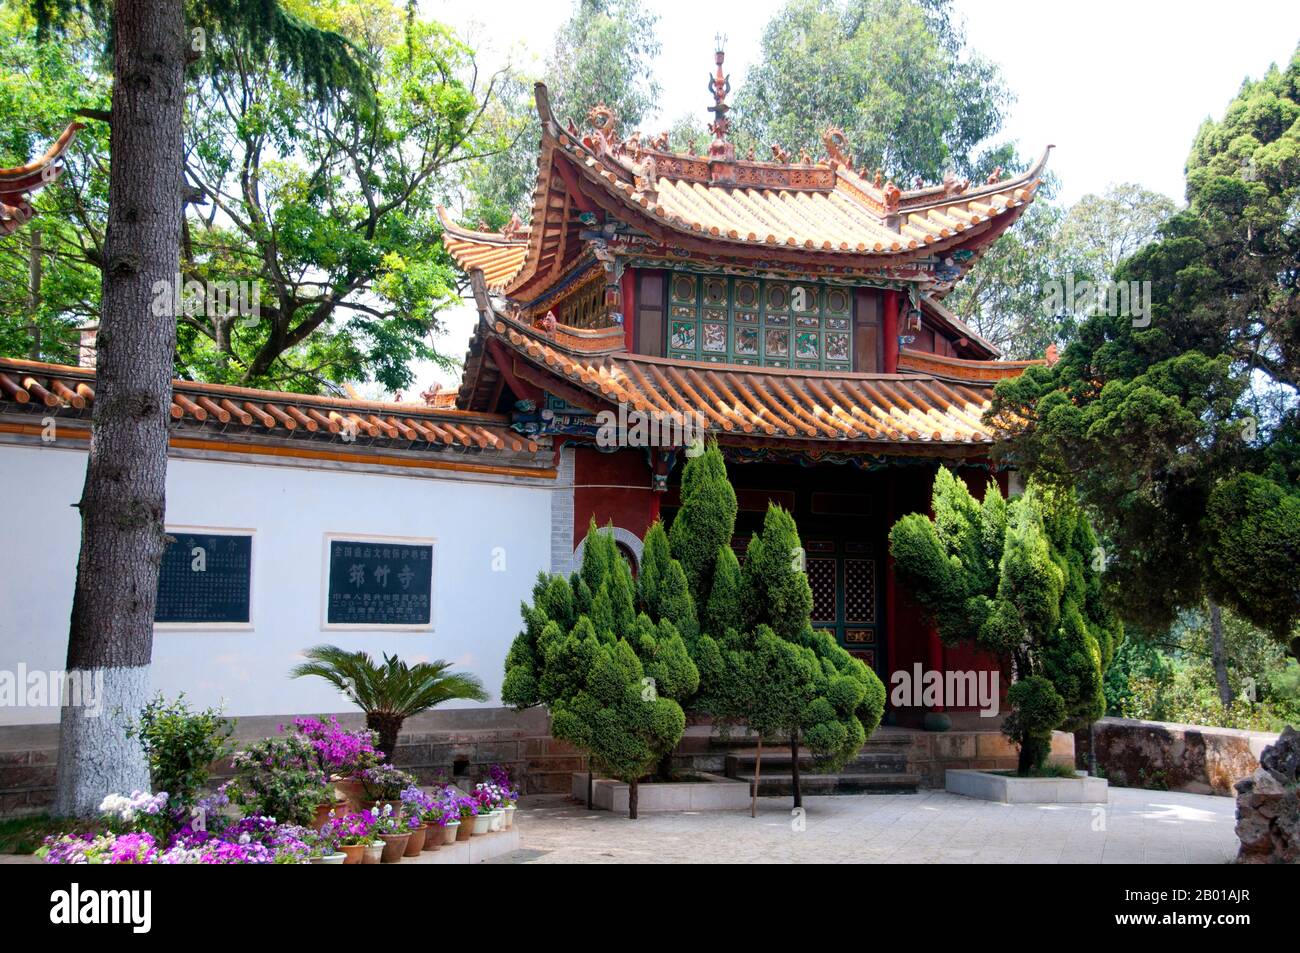 China: Eingang zum Qiongzhu Si (Bambustempel), nordwestlich von Kunming, Provinz Yunnan. Der Qiongzhu Si (Bambus-Tempel) wurde ursprünglich während der Tang-Dynastie (618-907) erbaut, wurde jedoch während der Yuan-Dynastie (1271-1368) als erster Tempel, der dem Zen-Buddhismus in Yunnan gewidmet war, ordnungsgemäß errichtet. Der Tempel ist berühmt für seine 500 bemalten Arhats, die während der Herrschaft des Qing-Imperators Guangxu (1875-1909) vom Bildhauer Li Guangxiu geschaffen wurden. Stockfoto